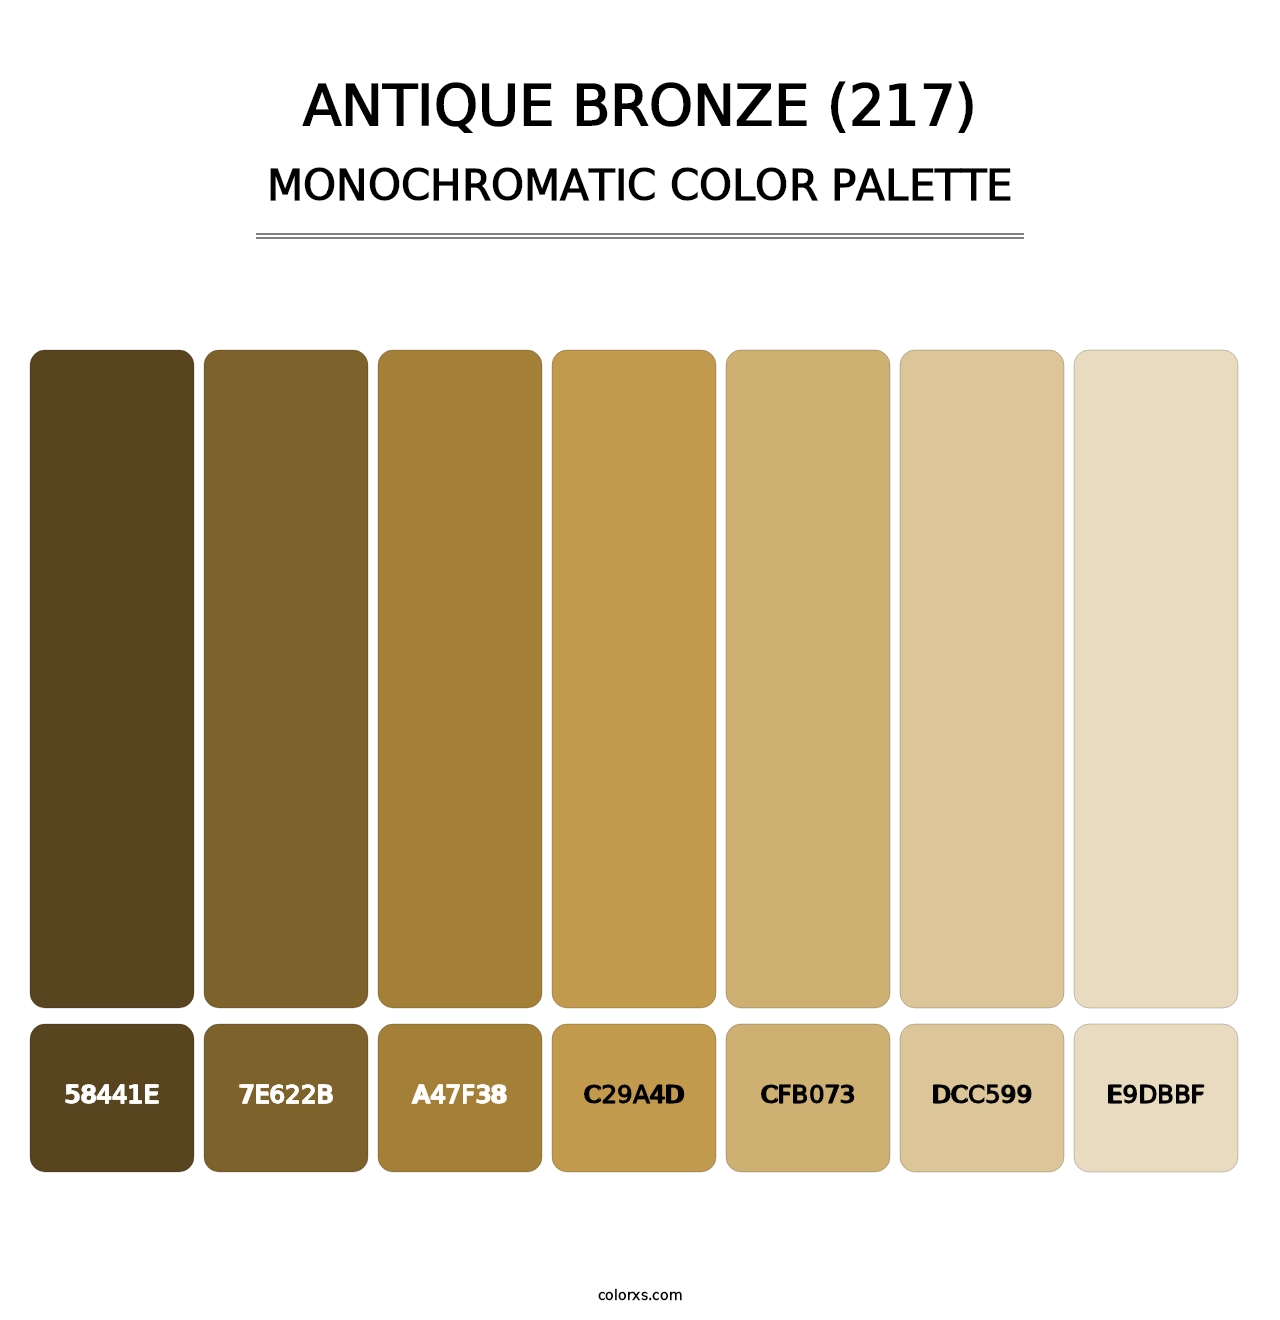 Antique Bronze (217) - Monochromatic Color Palette